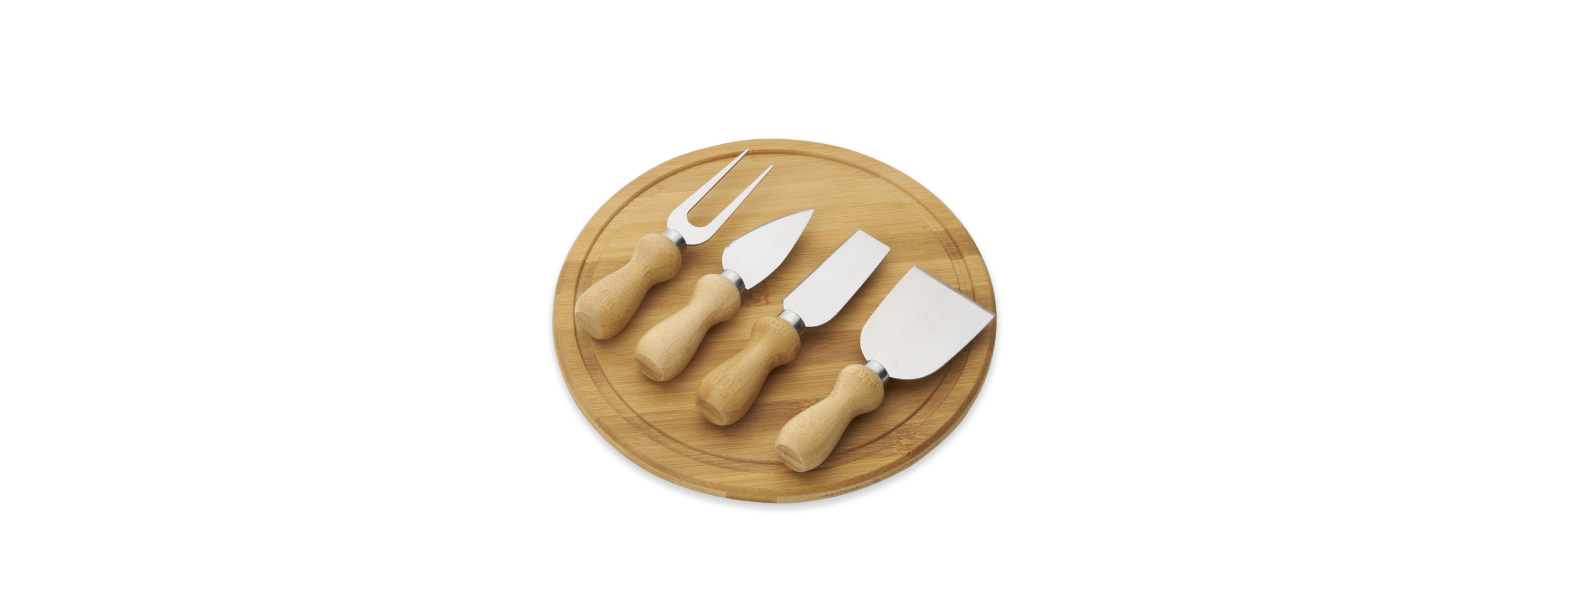 Kit para queijo. Conta com tábua redonda em bambu; três facas e garfo para queijos. Tábua confeccionada com tripla camada invertida, para dar maior durabilidade e não deformar com o passar do tempo.